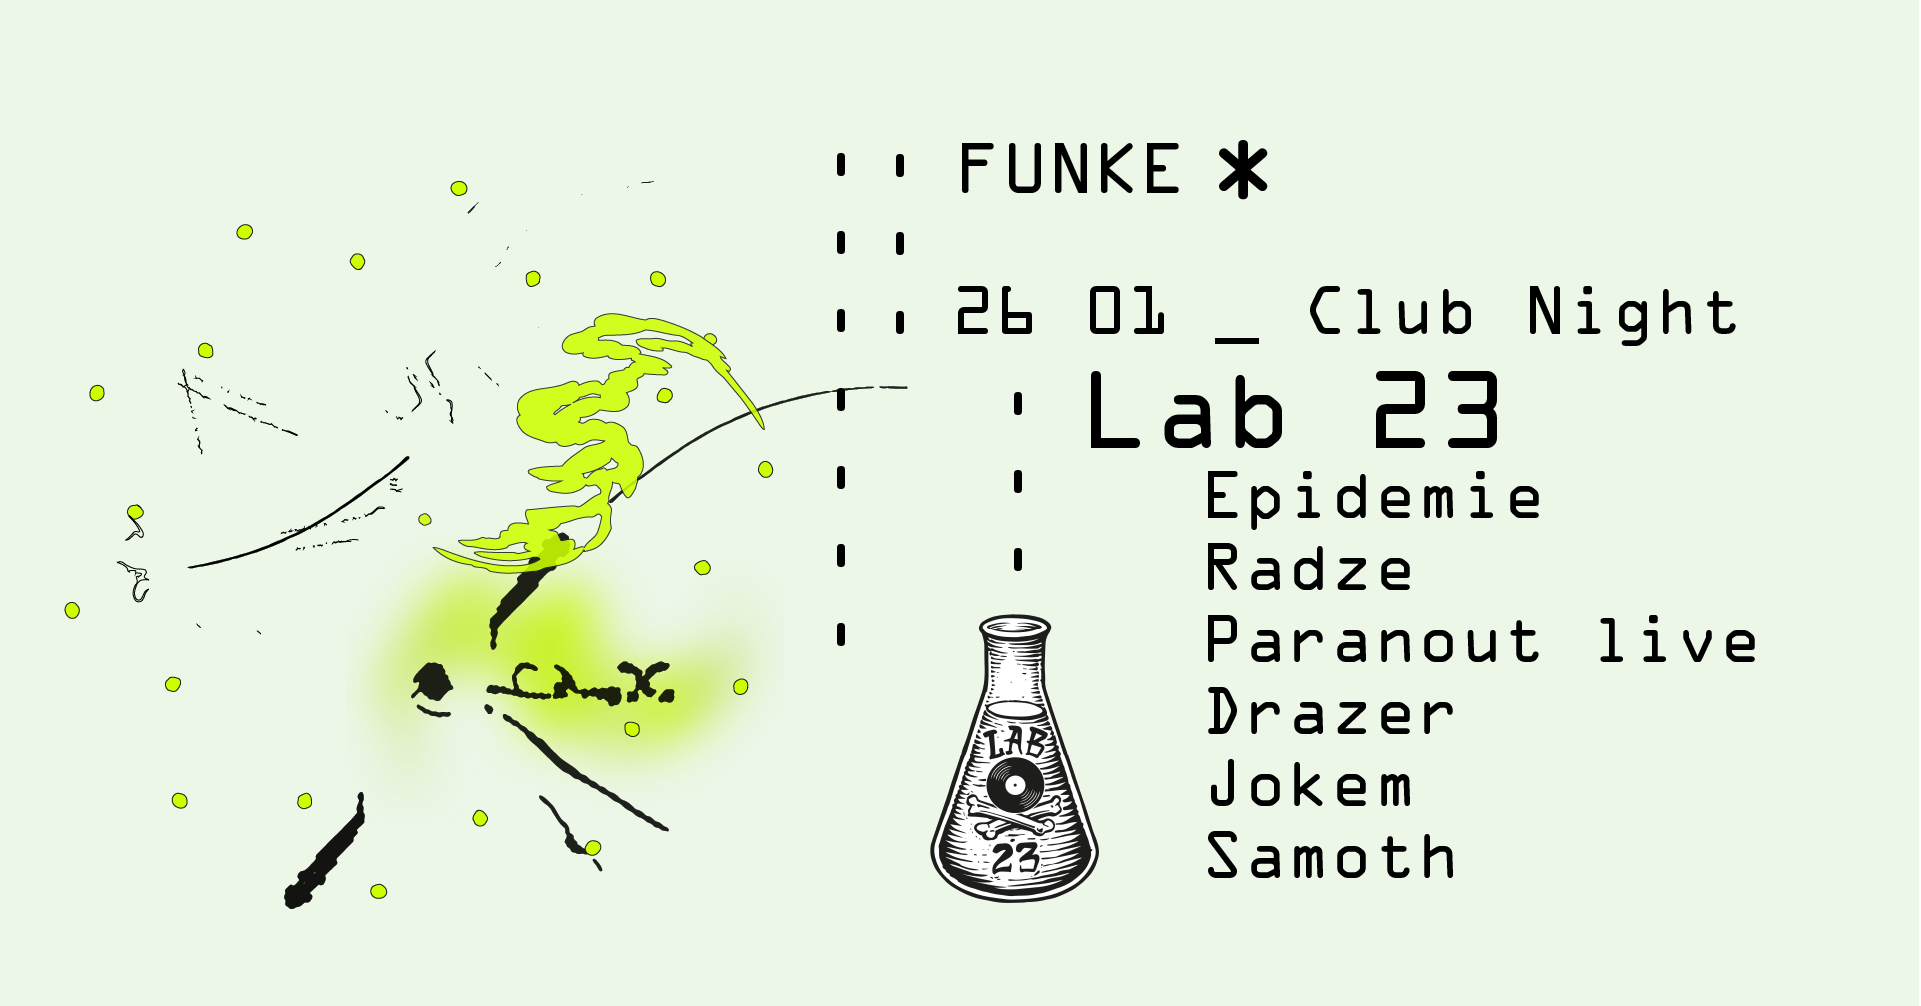 Funke_Lab23 w/ Epidemie, Radze, Paranout (live), Drazer, Jokem, Samoth - Página frontal